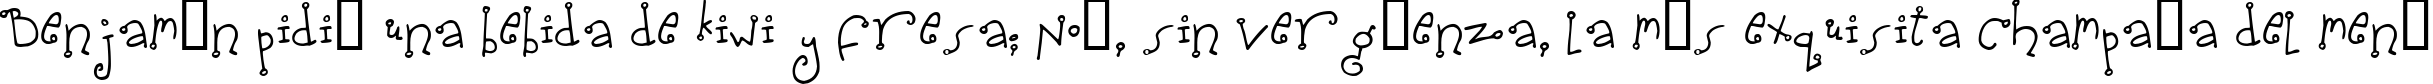 Пример написания шрифтом Spidershank текста на испанском